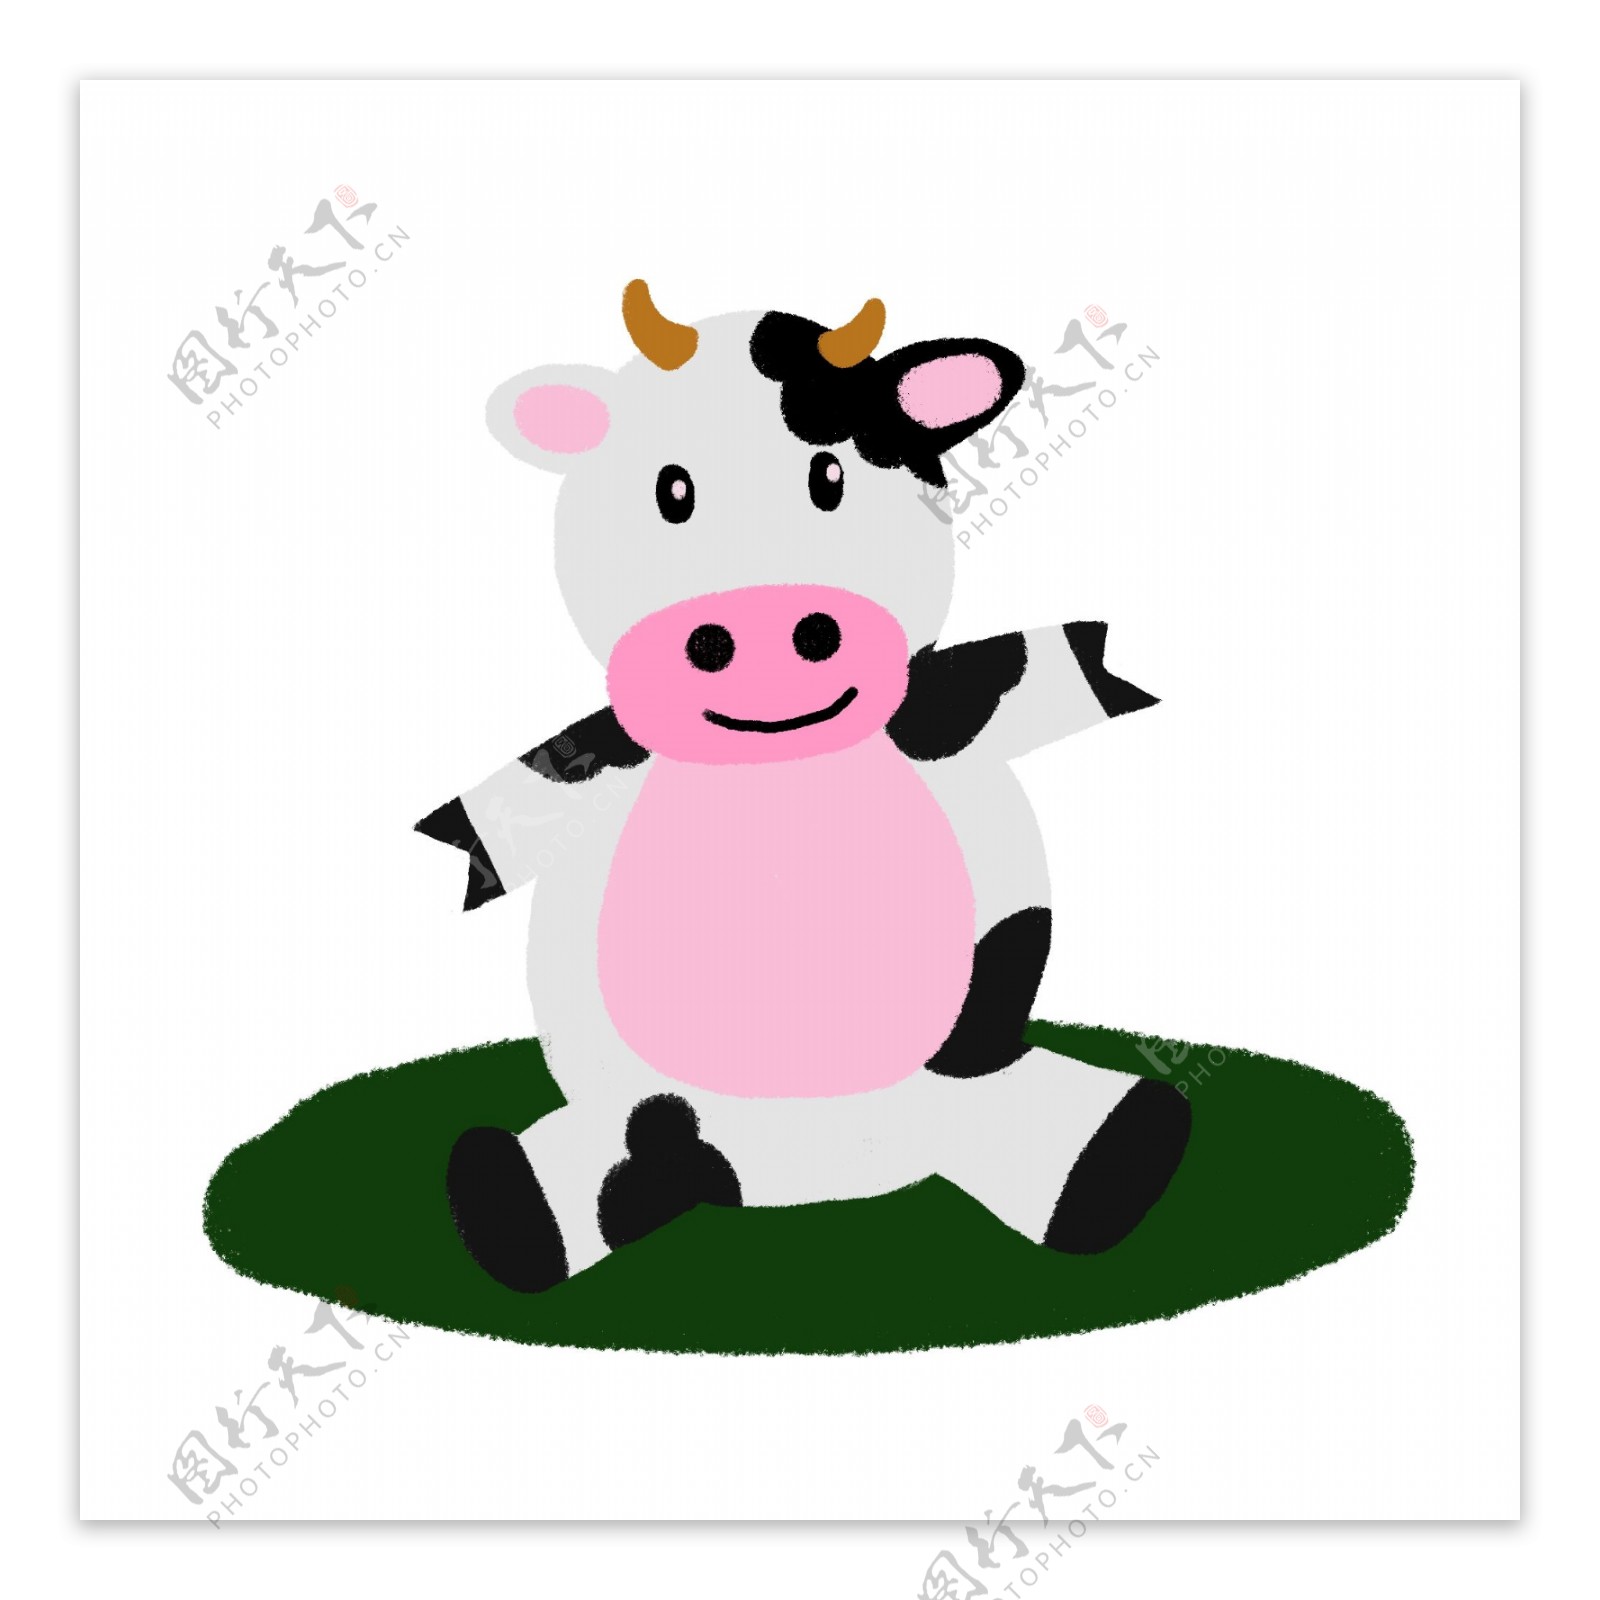 坐立的奶牛可爱卡通手绘